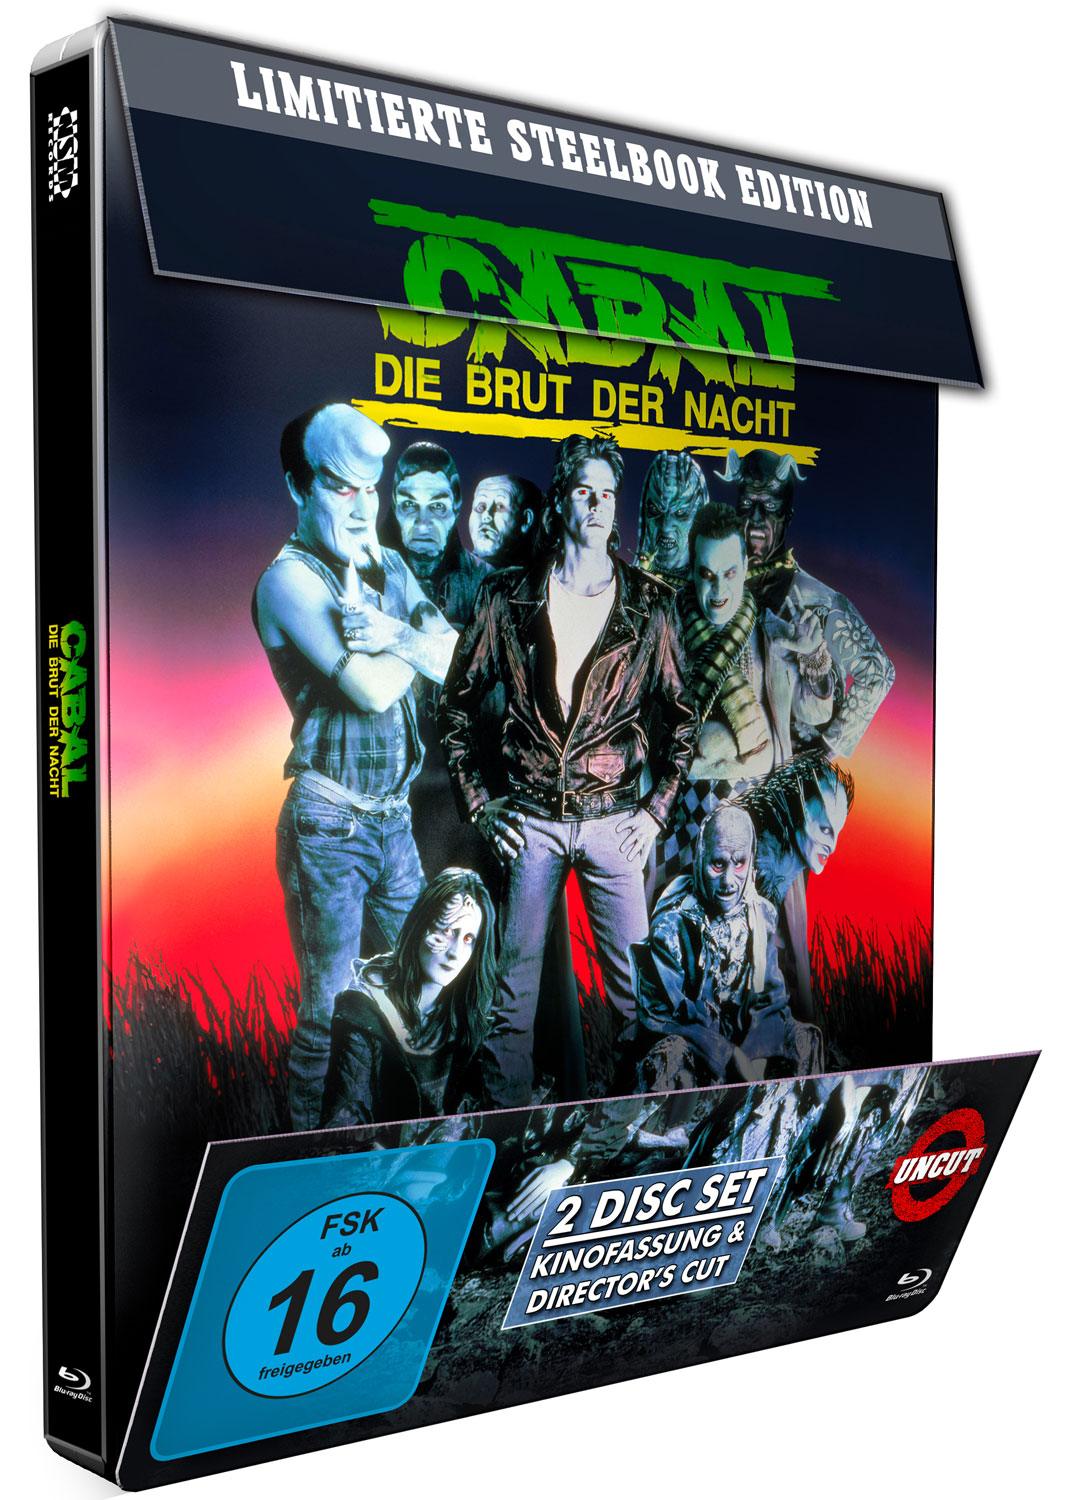 Cabal - Die Brut der Nacht (Special Edition) (Steelbook)